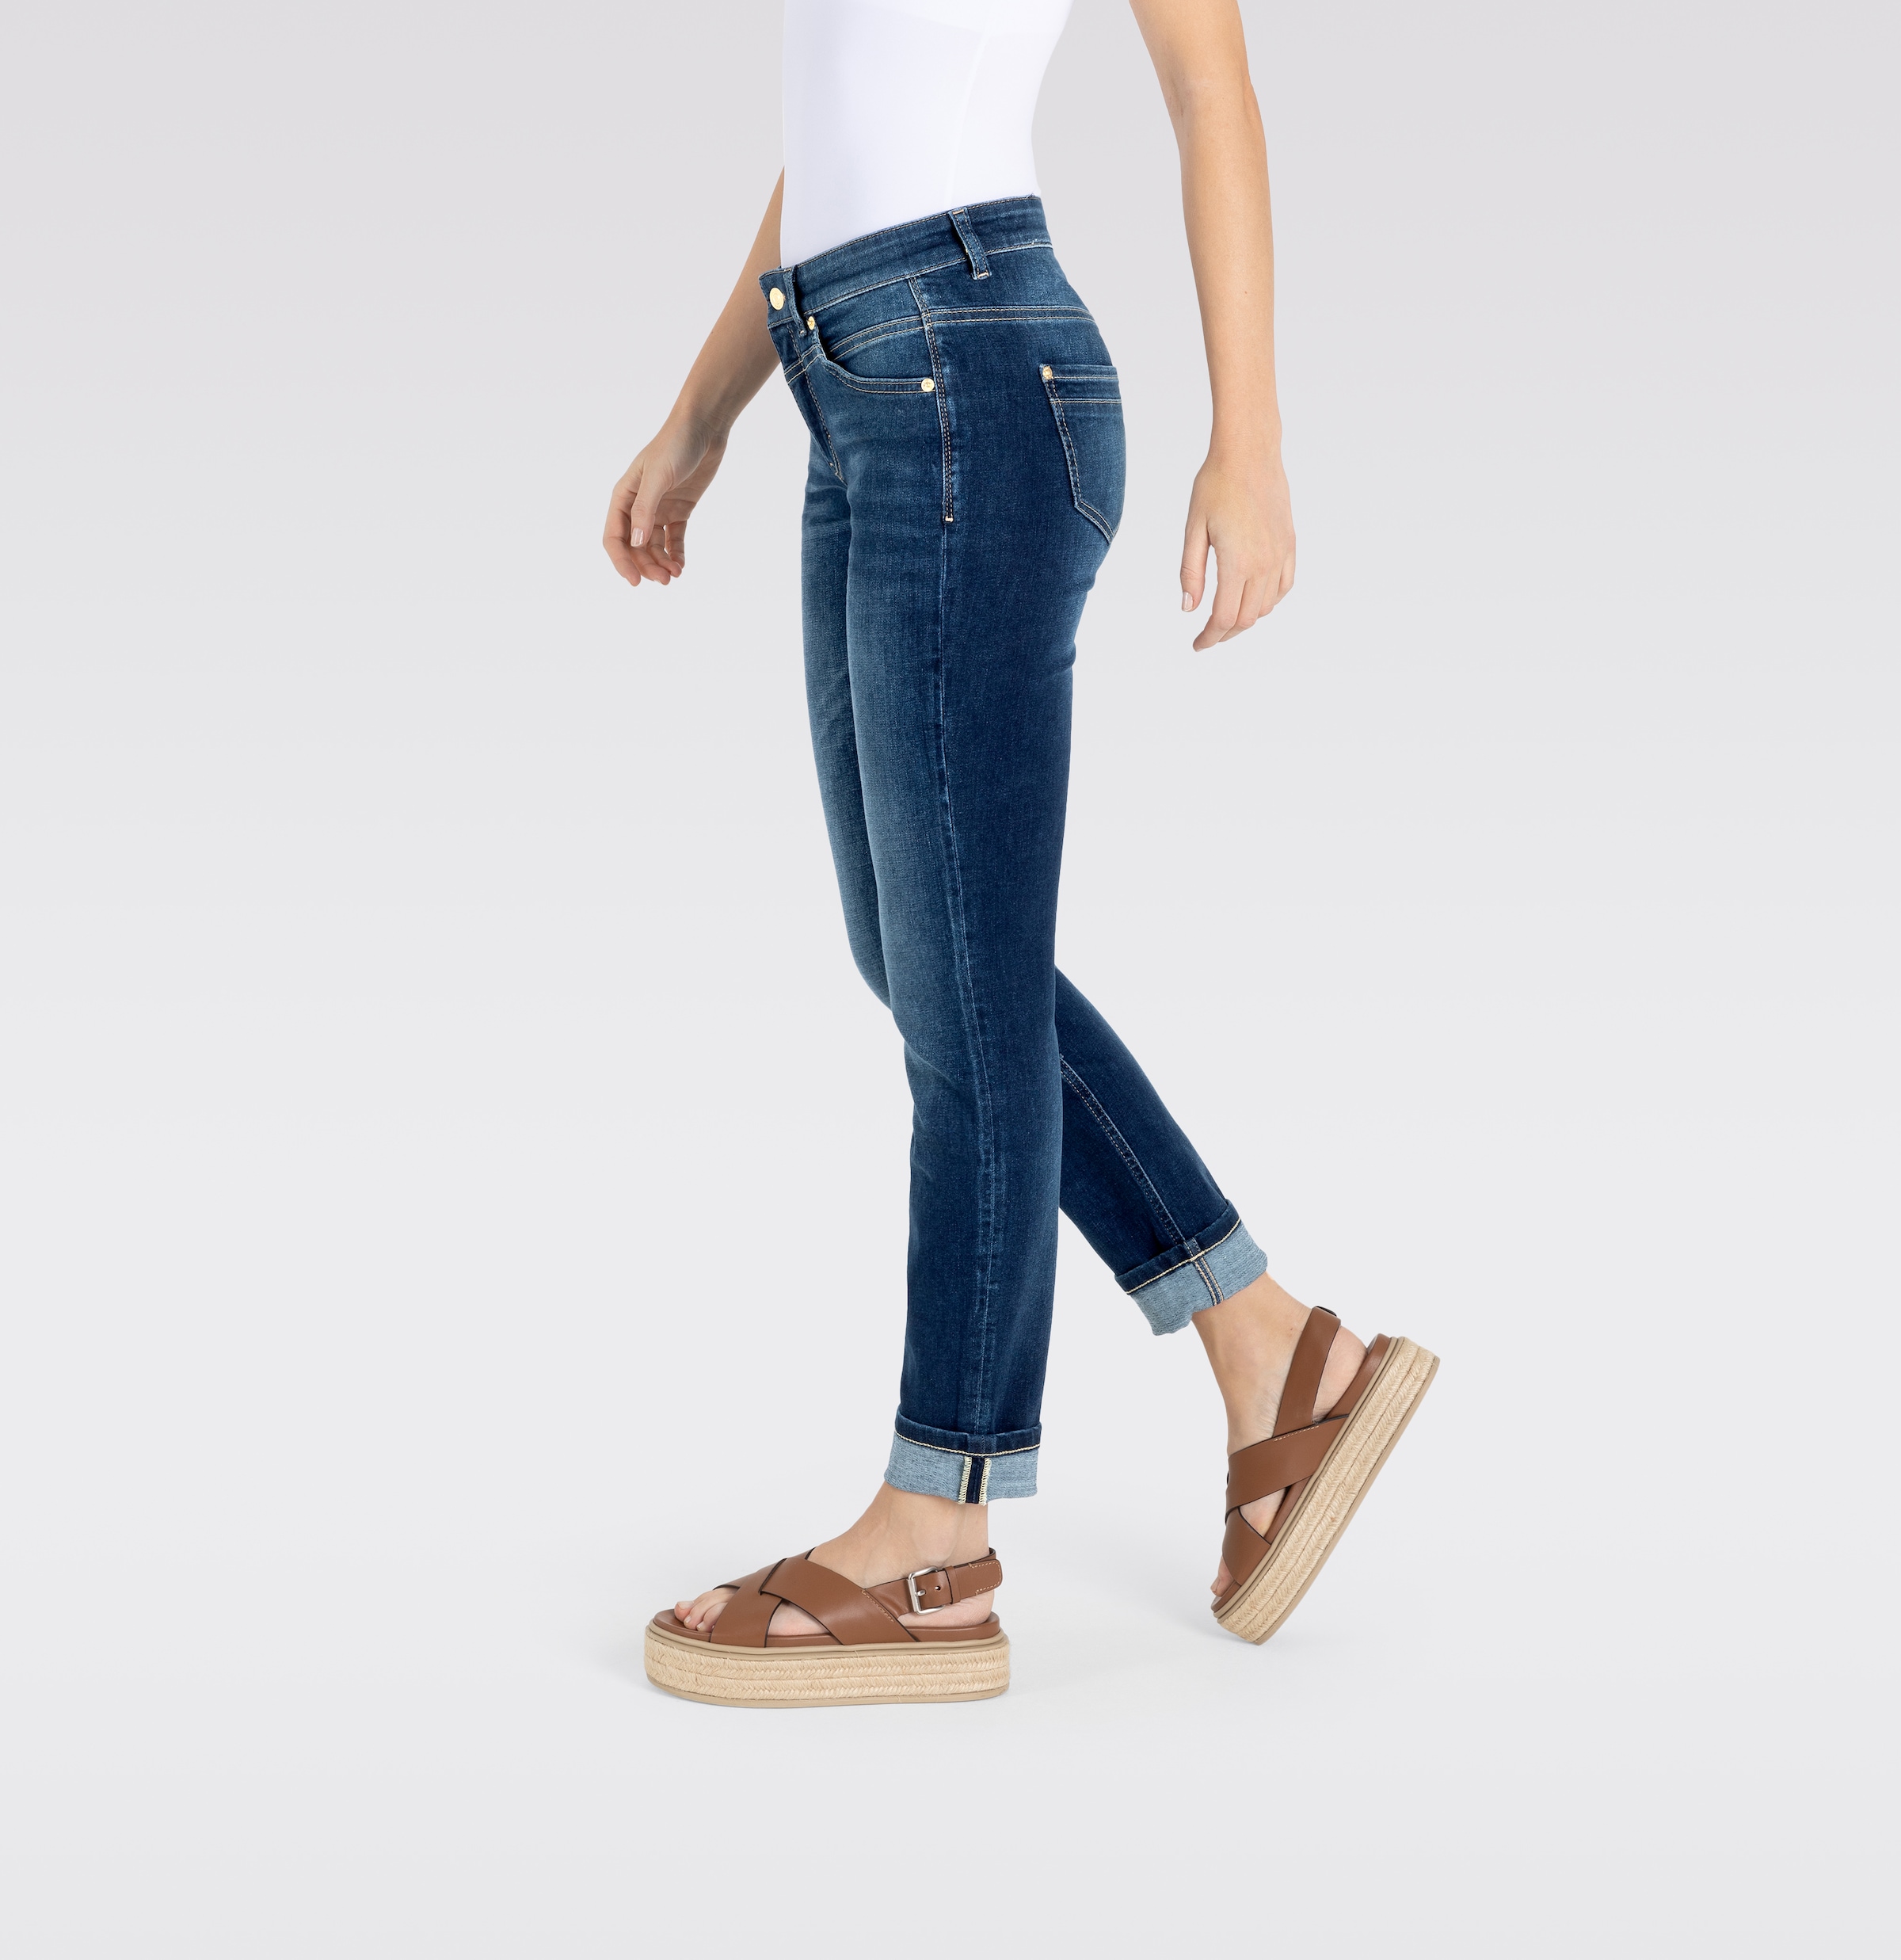 MAC Slim-fit-Jeans »Rich-Slim«, Robuste strukturierte Denimqualität